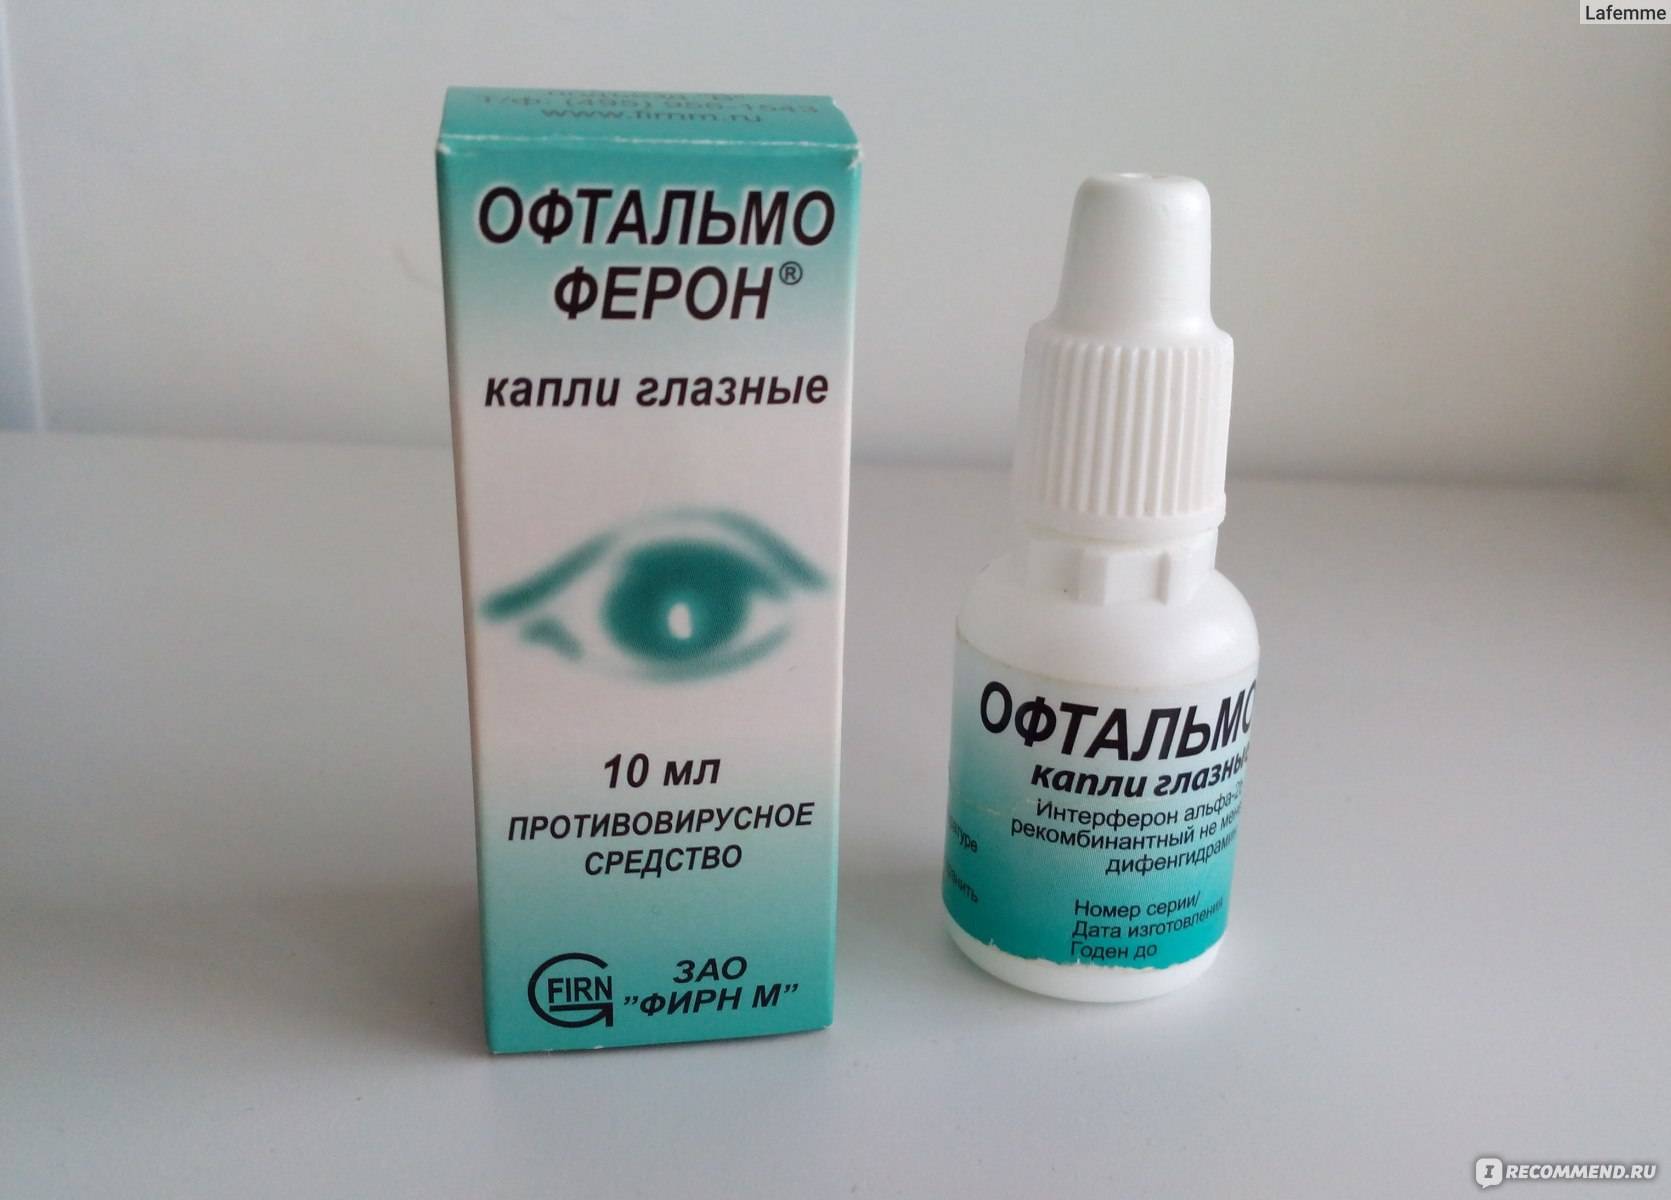 Глазные капли офтальмоферон: аналоги и заменители oculistic.ru
глазные капли офтальмоферон: аналоги и заменители